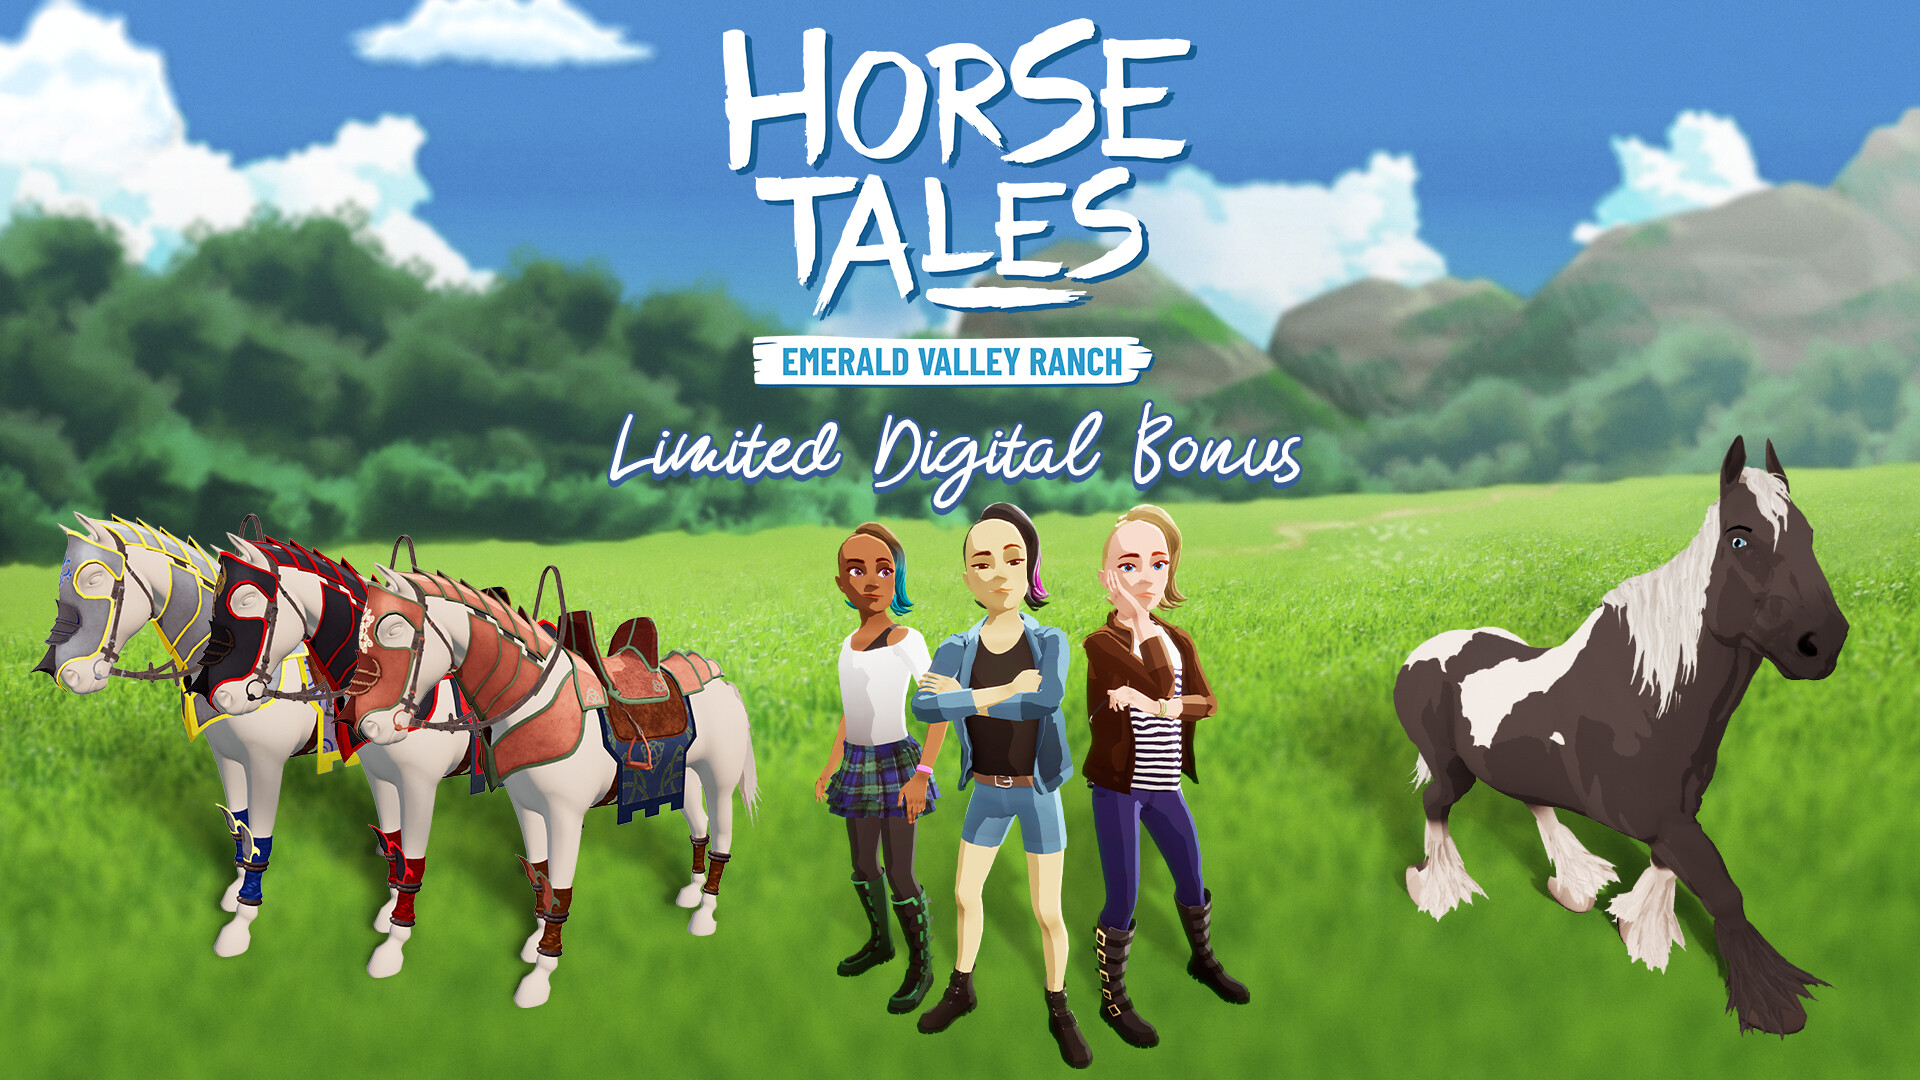 Horse Tales: Emerald Valley Ranch - Limited Digital Bonus DLC EU PS4 CD Key, $3.38